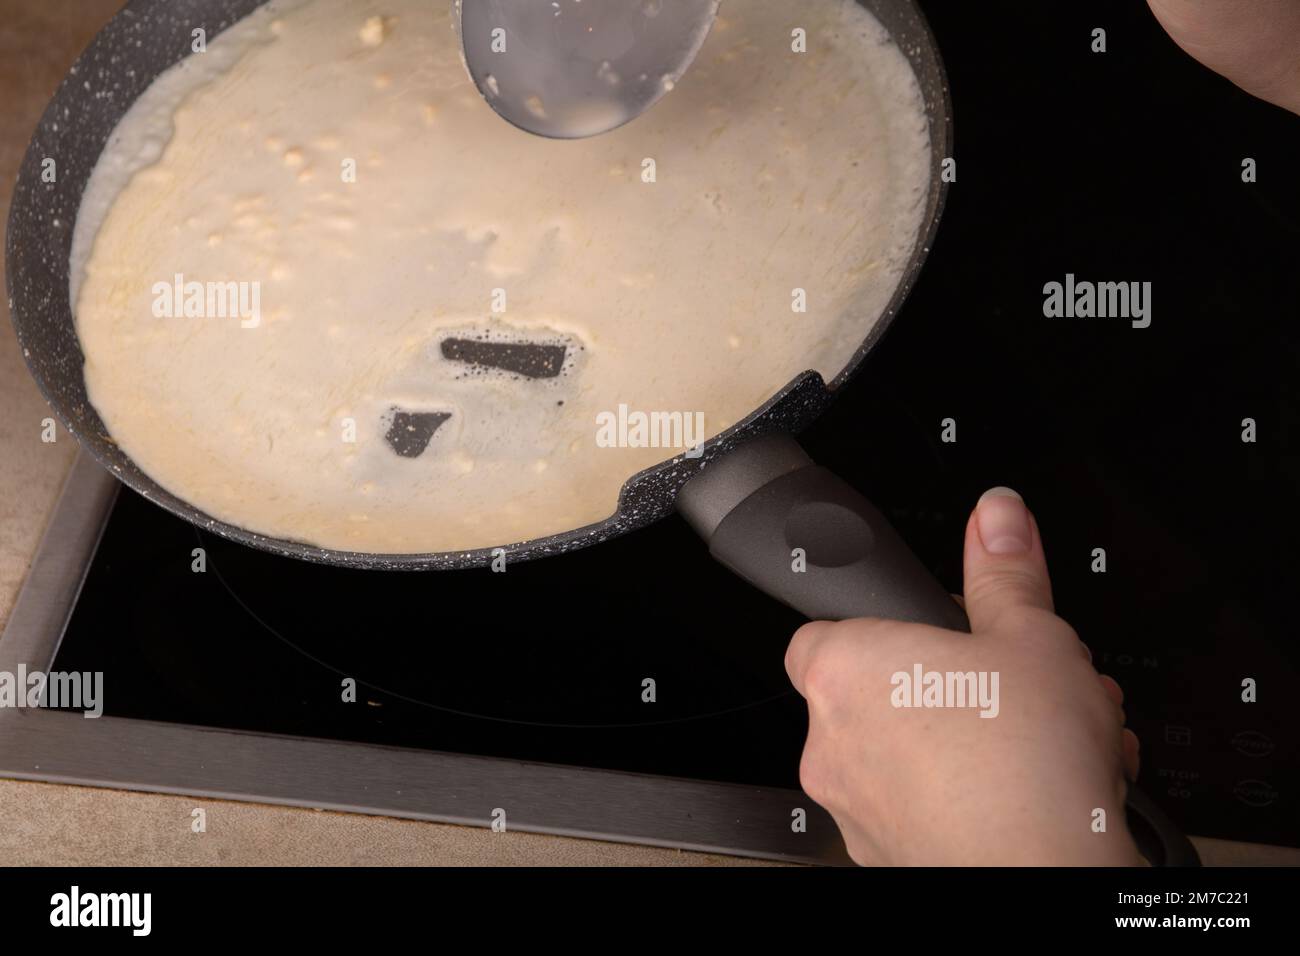 pâte à crêpes photo sur une casserole chaude, mains dans le cadre Banque D'Images